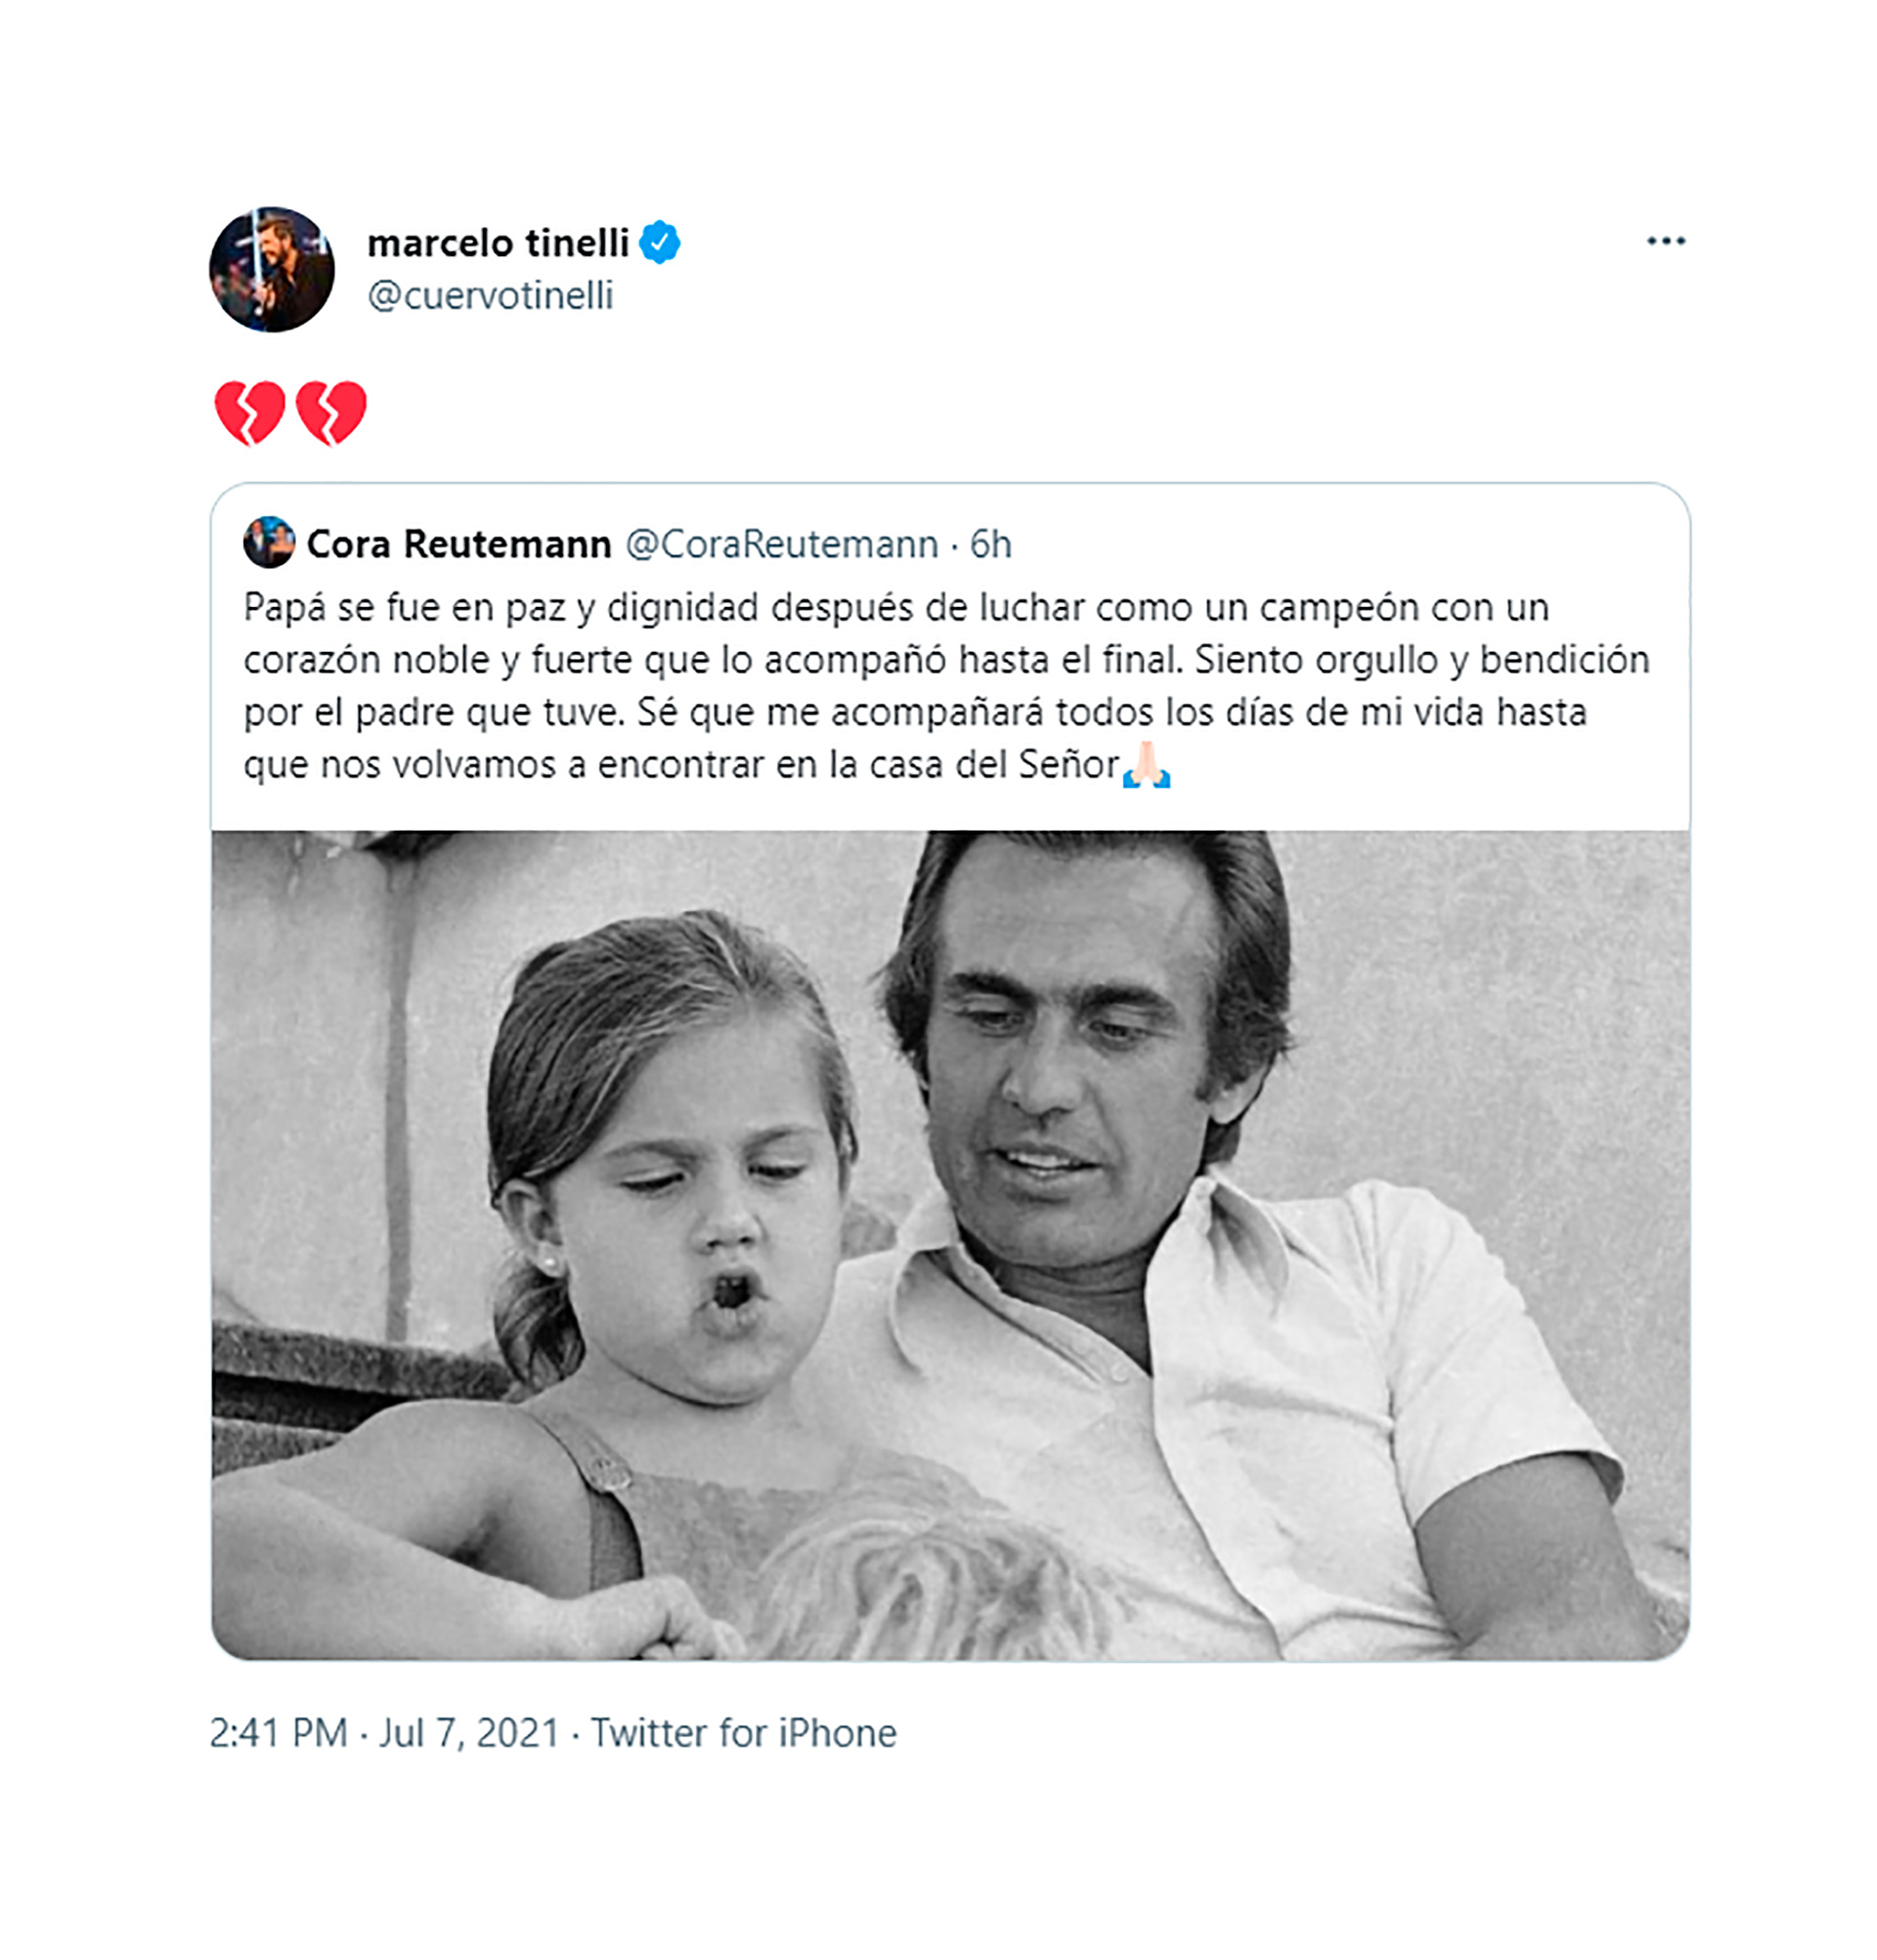 La reacción de Marcelo Tinelli ante el tweet de Cora Reutemann anunciando el fallecimiento de Lole Reutemann